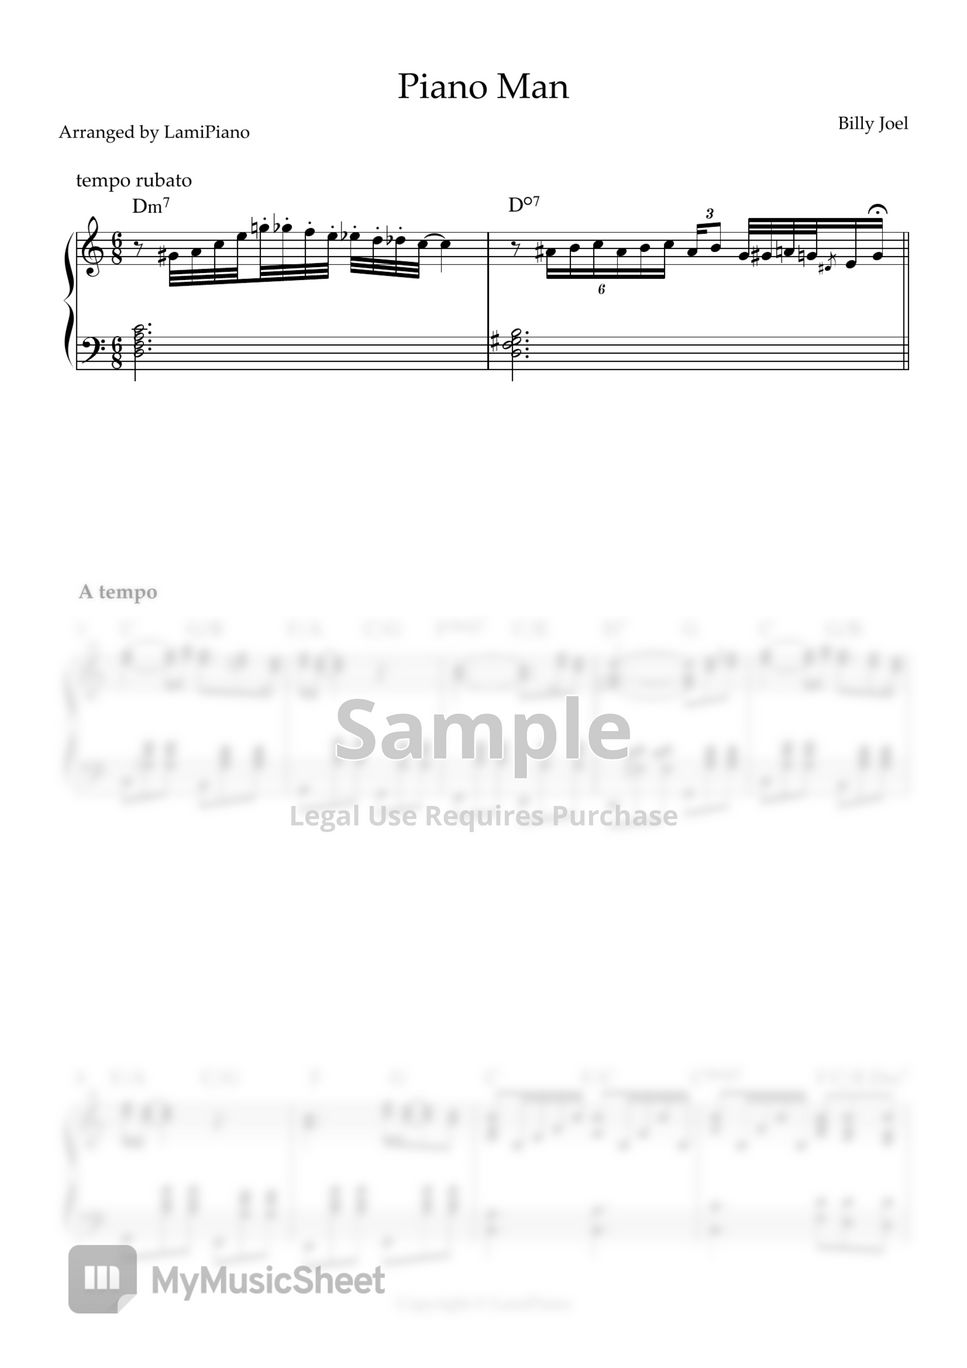 Billy Joel - Piano Man (Pop / Chords / solo piano) by LamiPiano